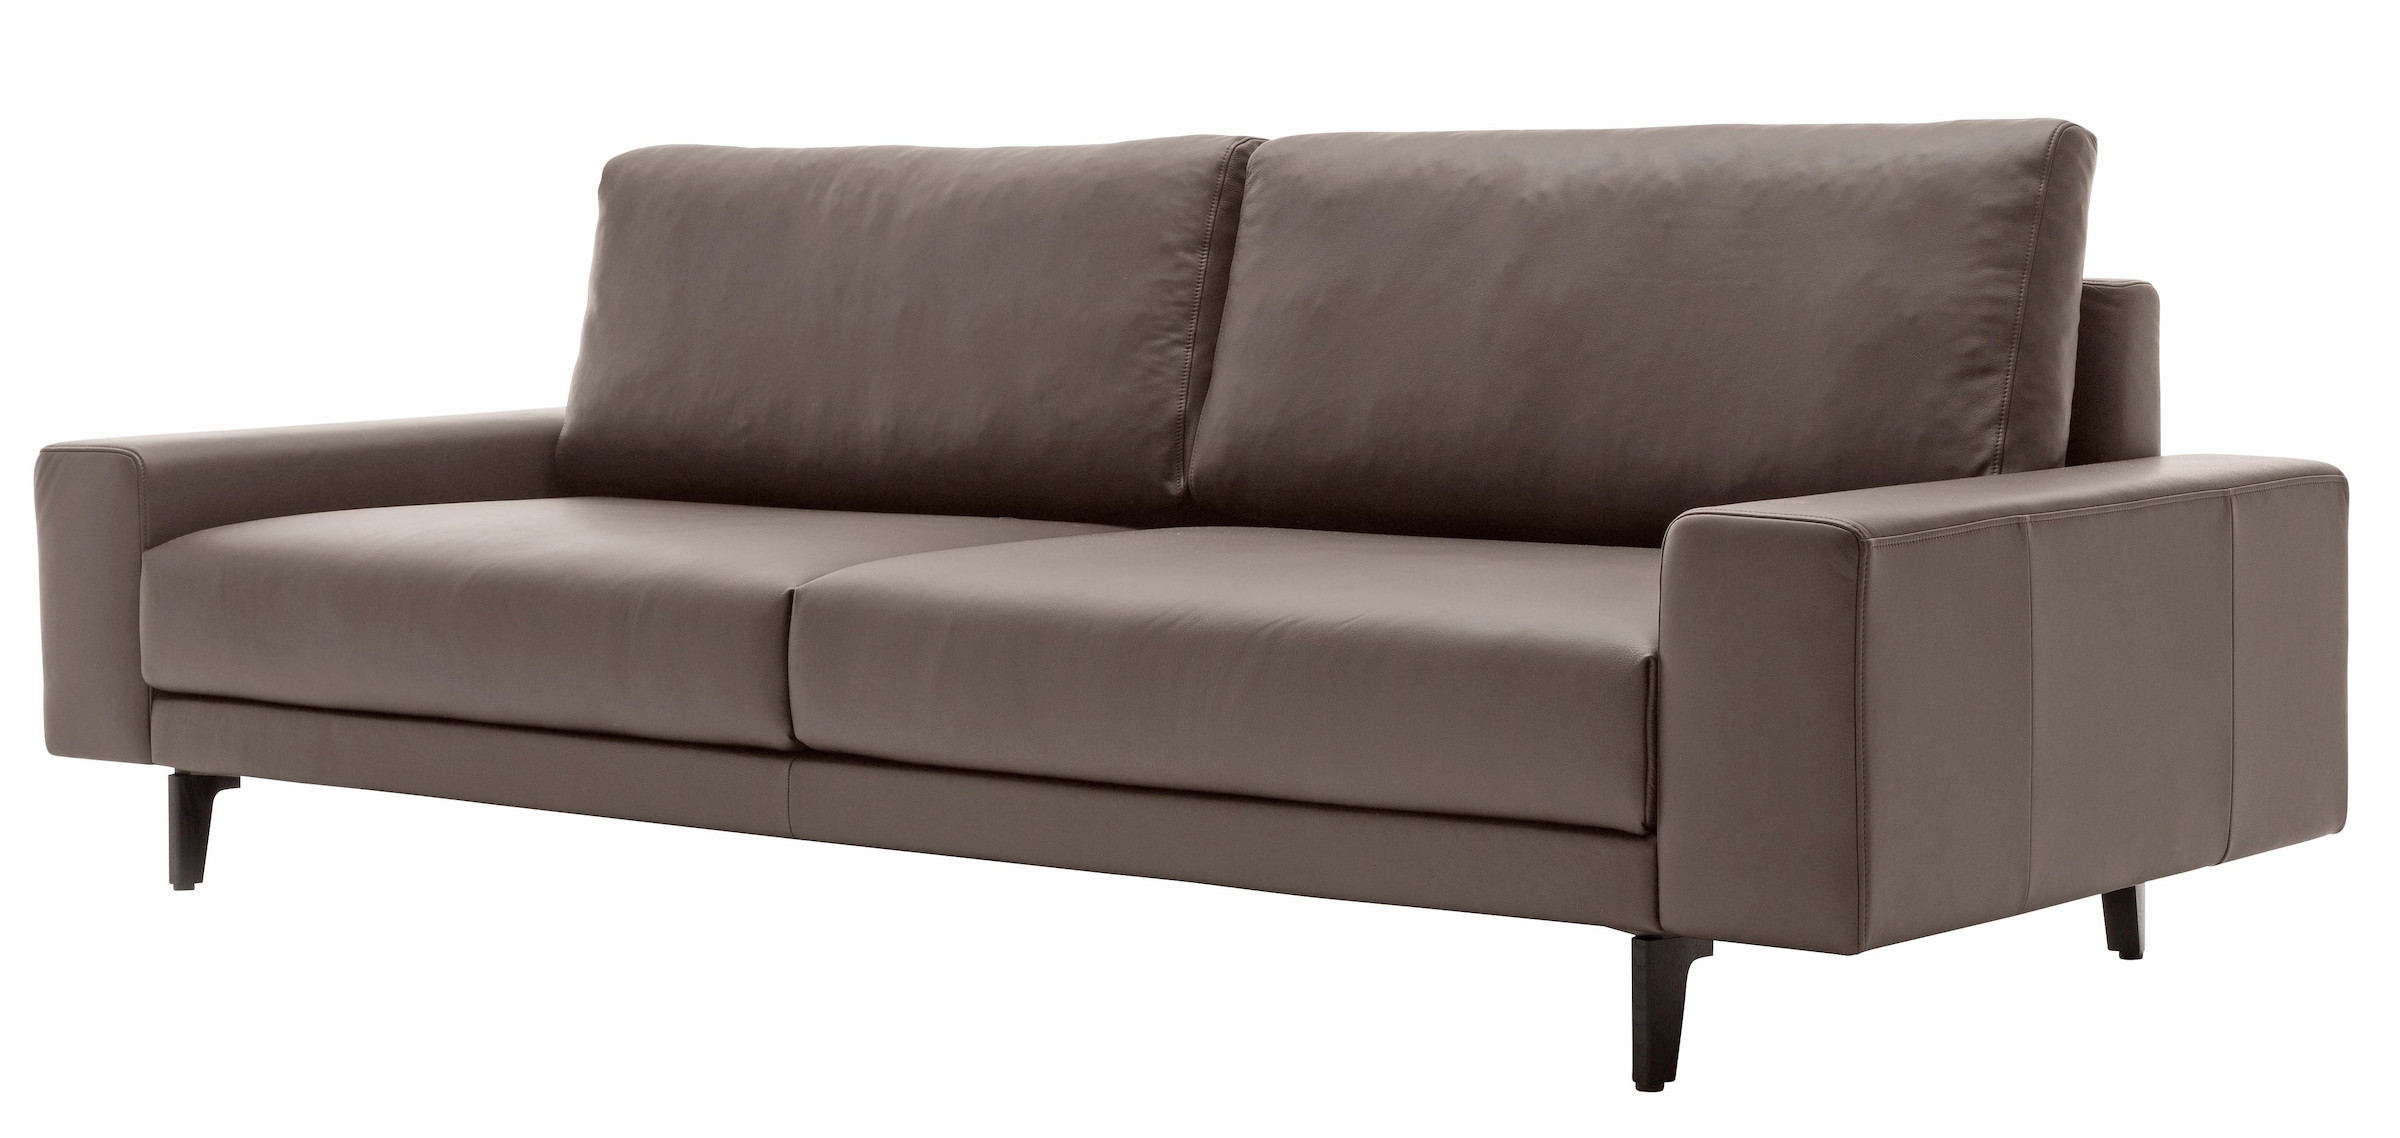 Armlehne Breite 220 OTTO niedrig, »hs.450«, cm in umbragrau, sofa hülsta Alugussfüße bei breit 3-Sitzer